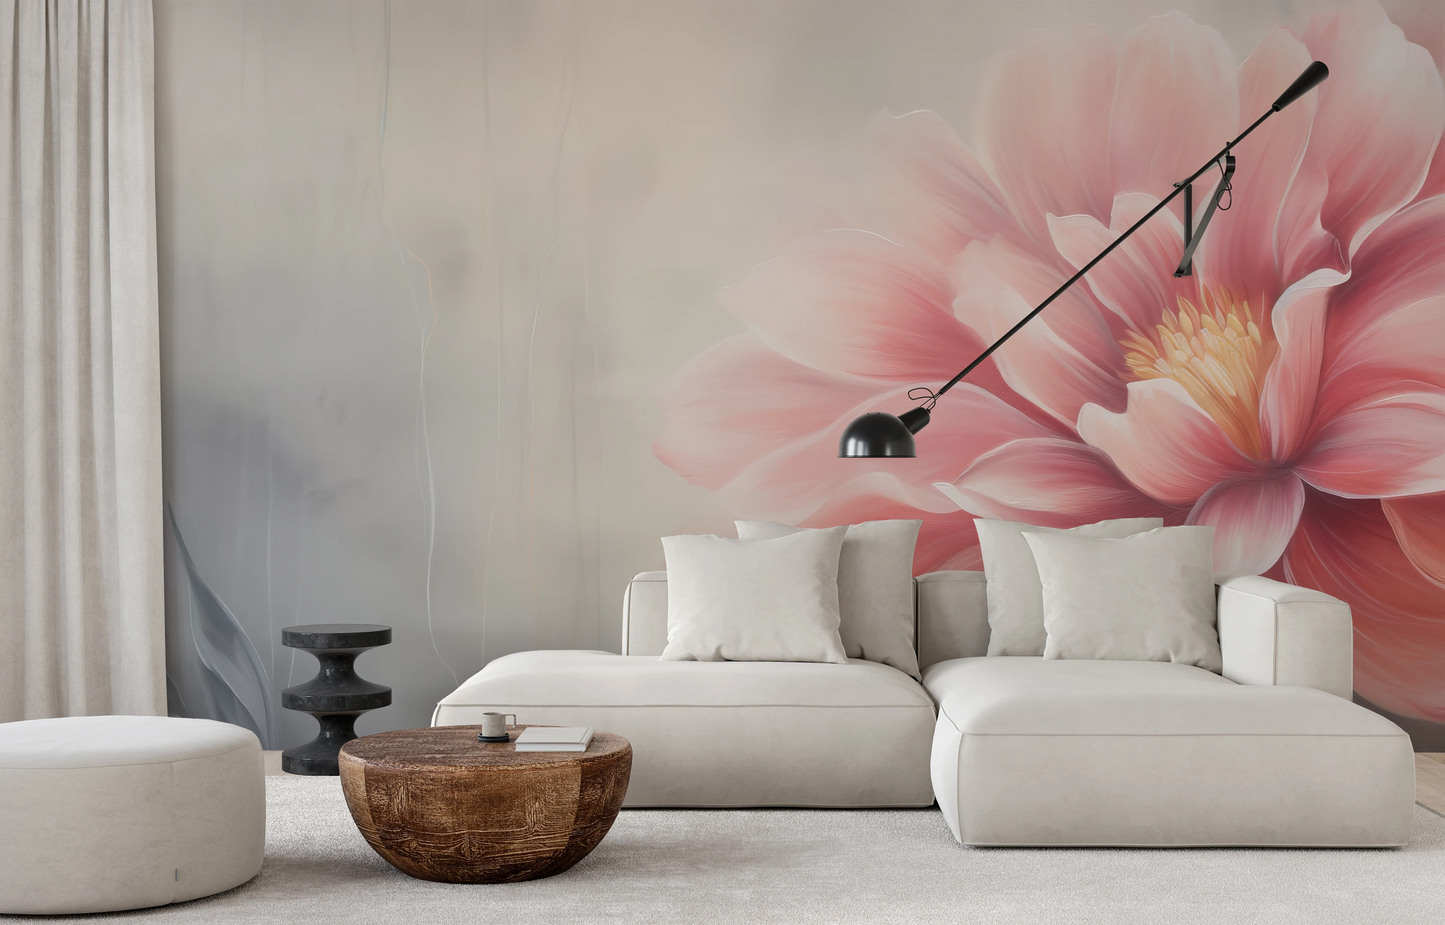 Fototapeta malowana o nazwie Coral Bloom pokazana w aranżacji wnętrza.